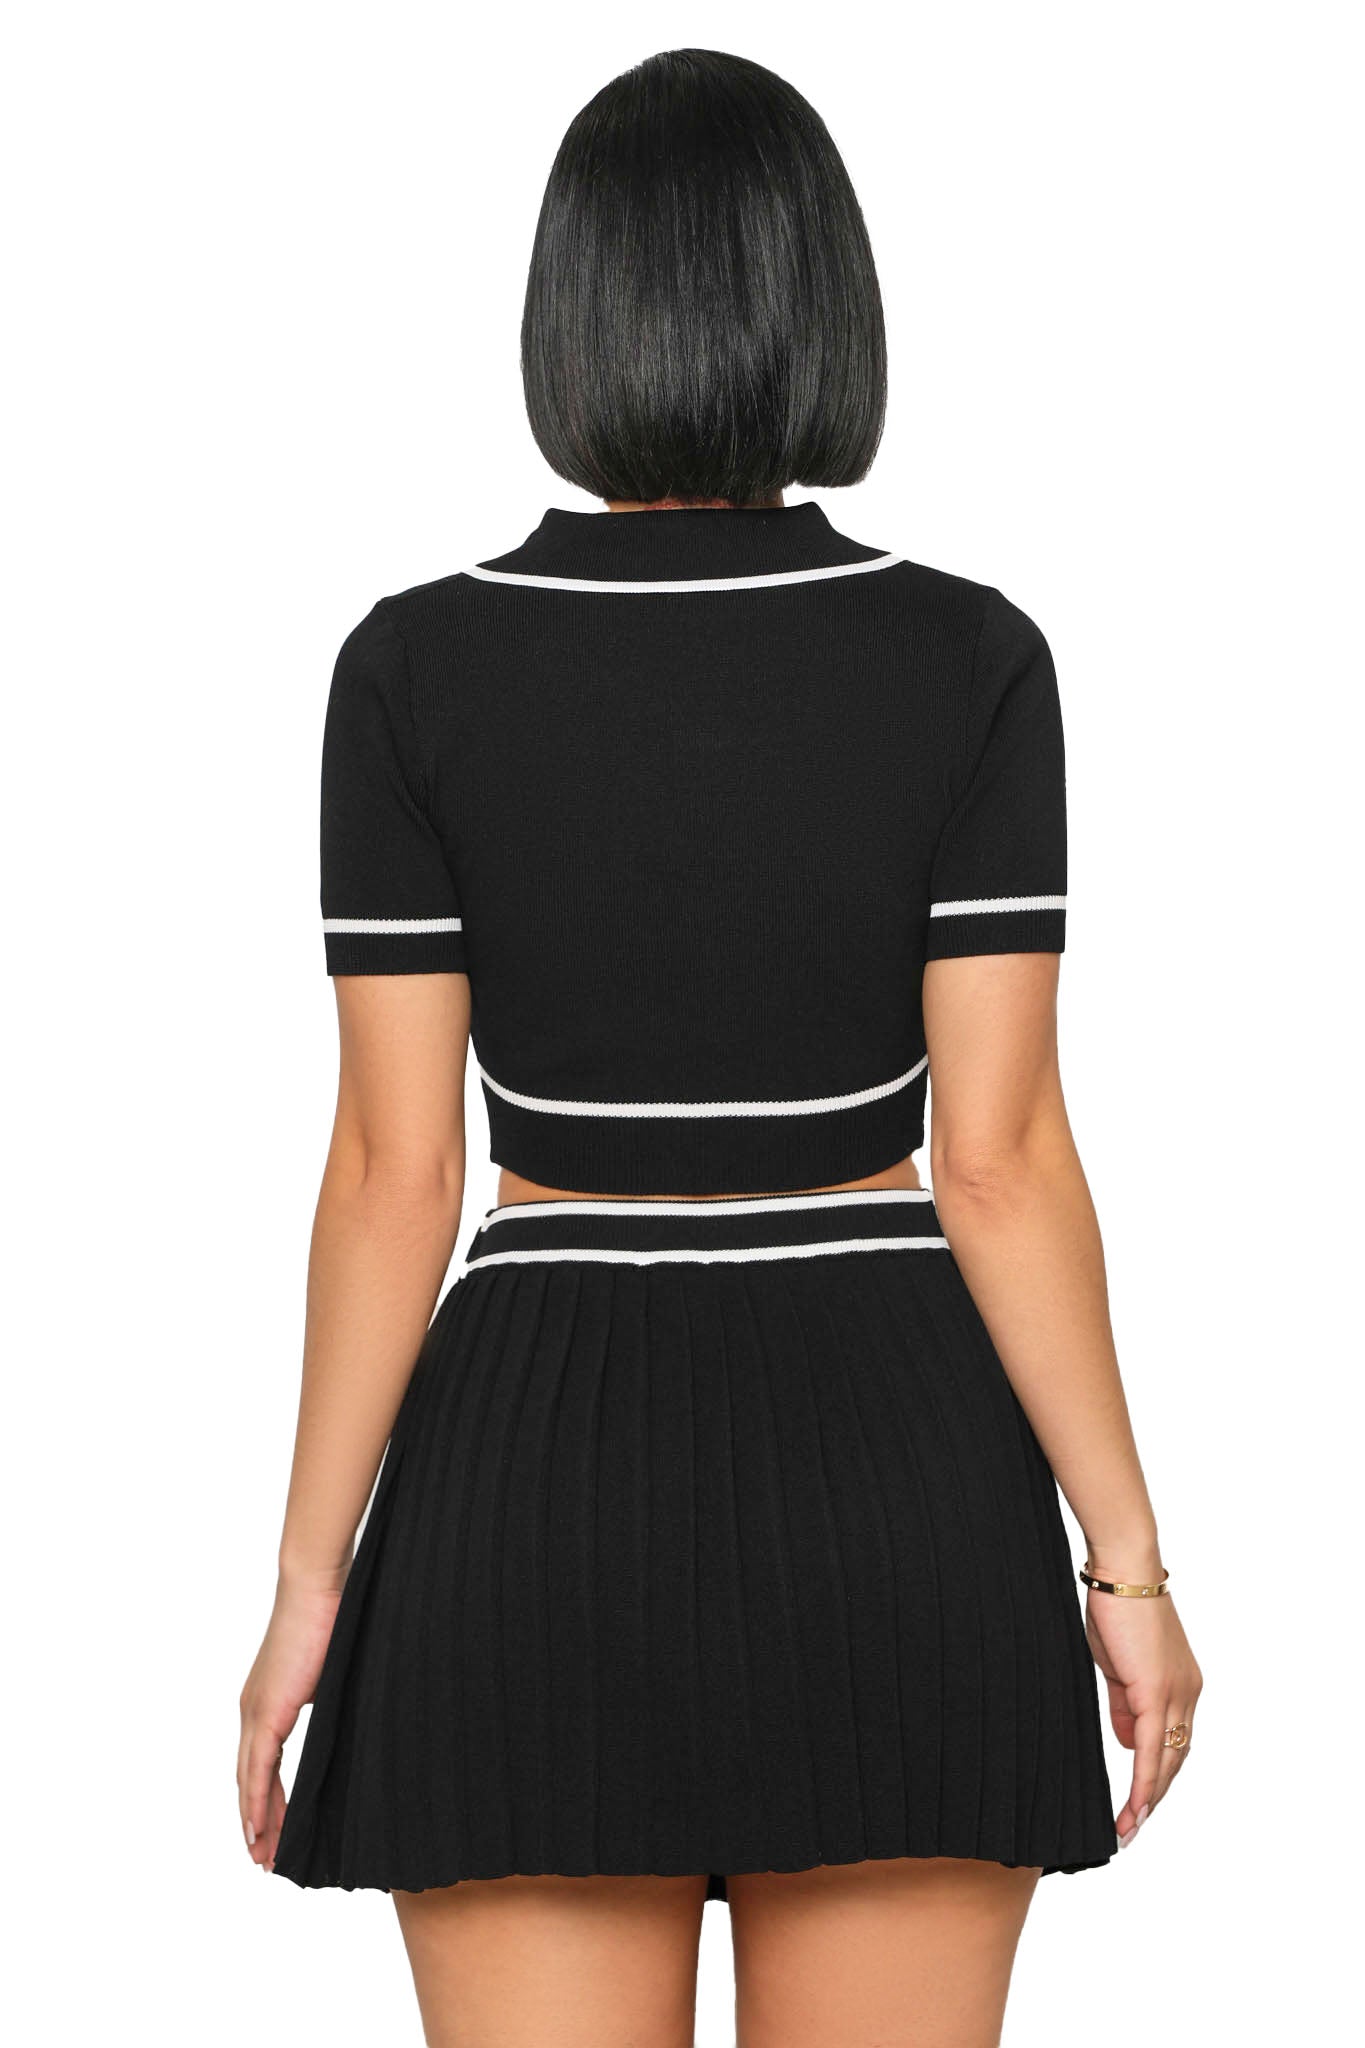 She Serves Skirt Set (Black)